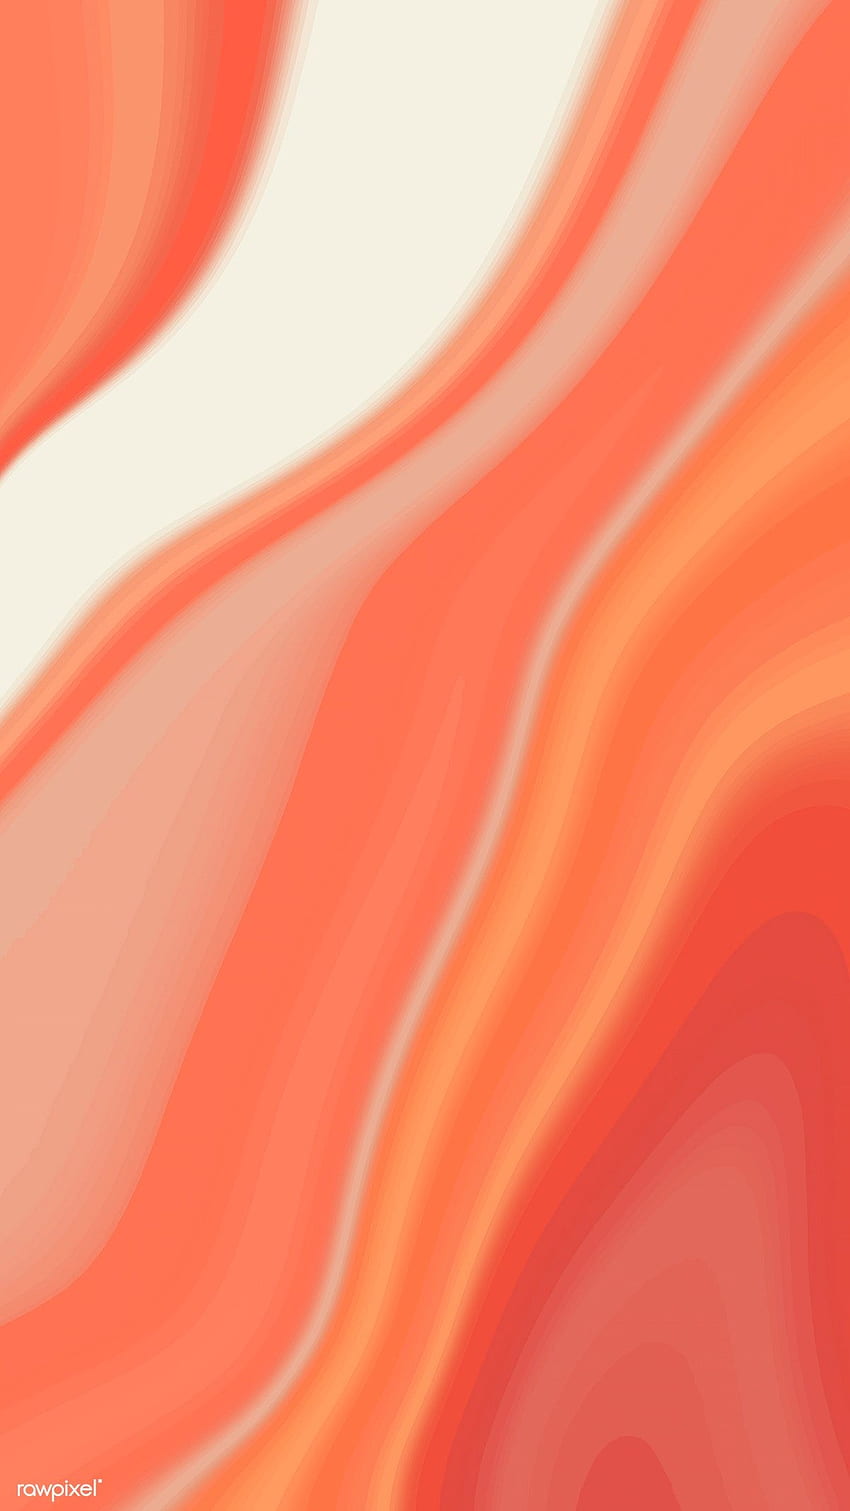 Premium-Vektor von orange und rot gemusterten Mobiltelefonen. Orange, orange Ästhetik, Koralle, rotes Papier HD-Handy-Hintergrundbild